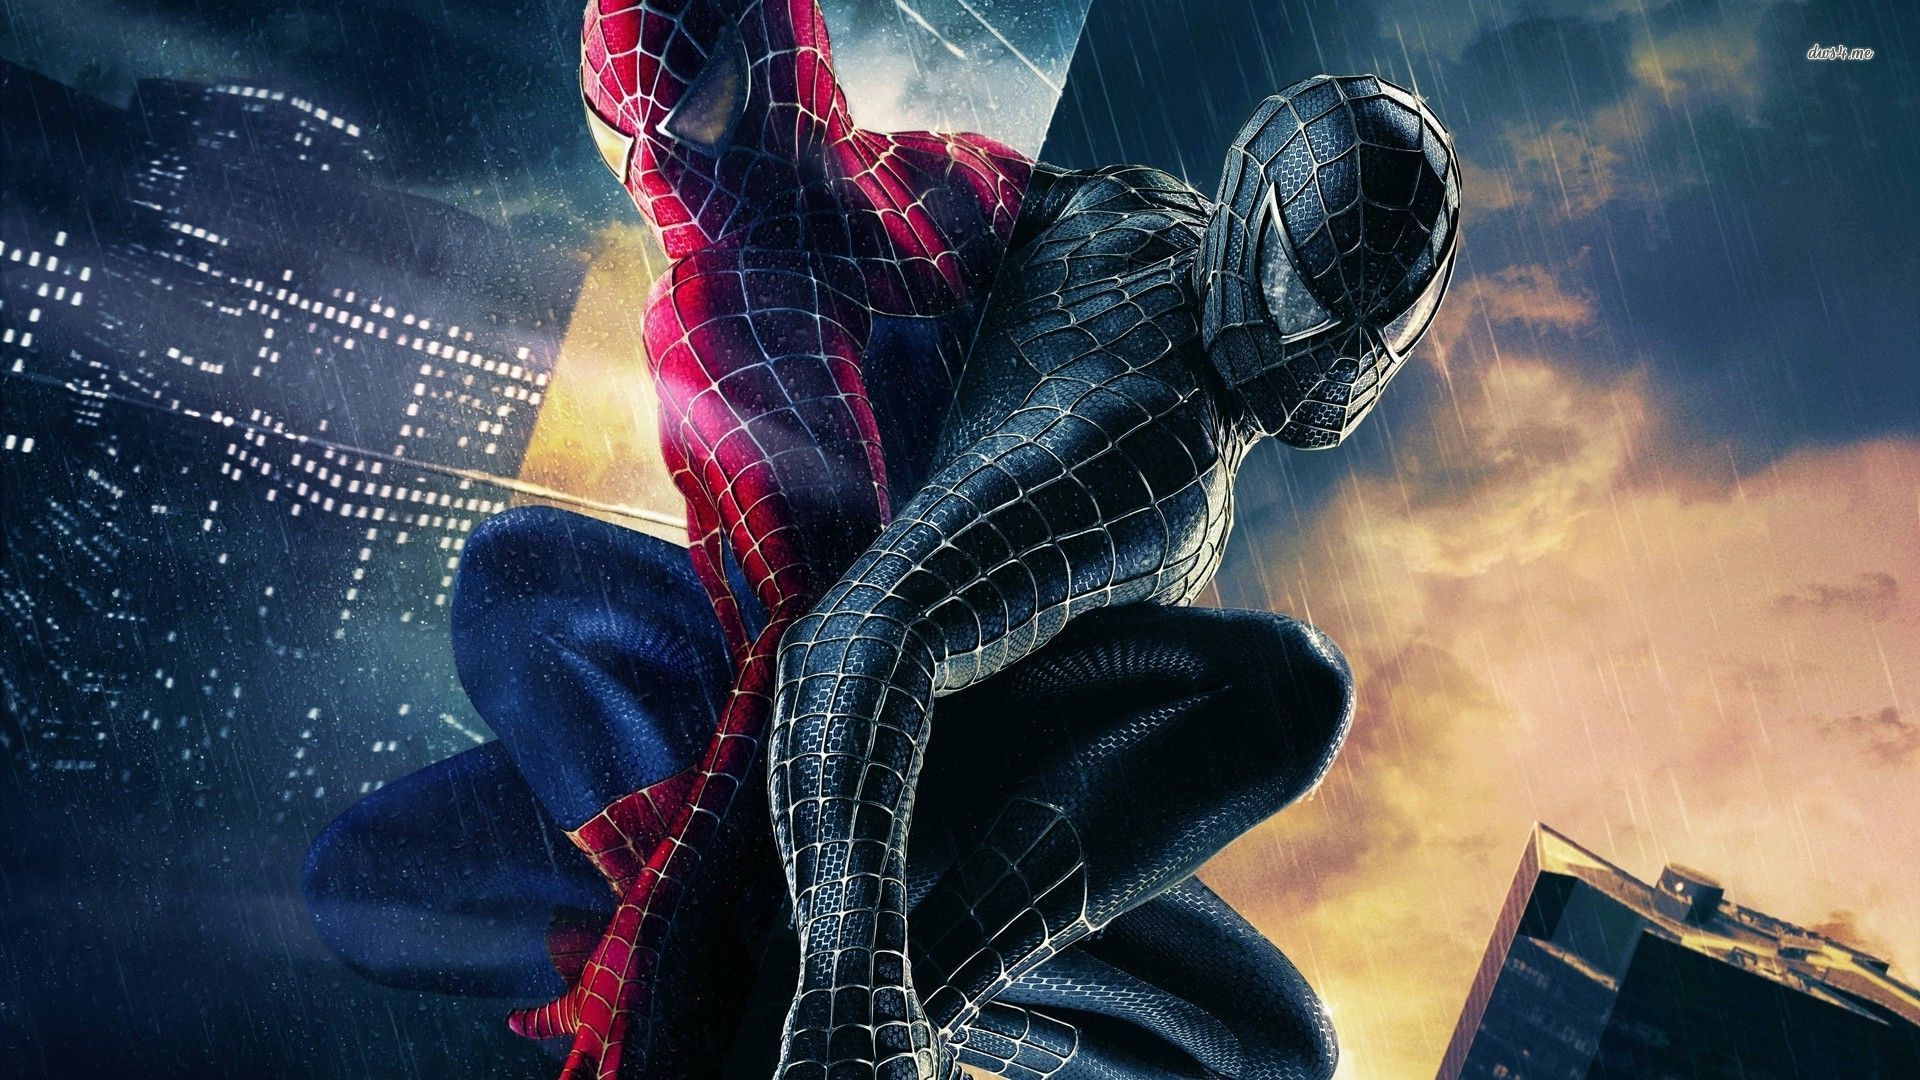 Black Spiderman Wallpapers Desktop Background - Kemecer.com